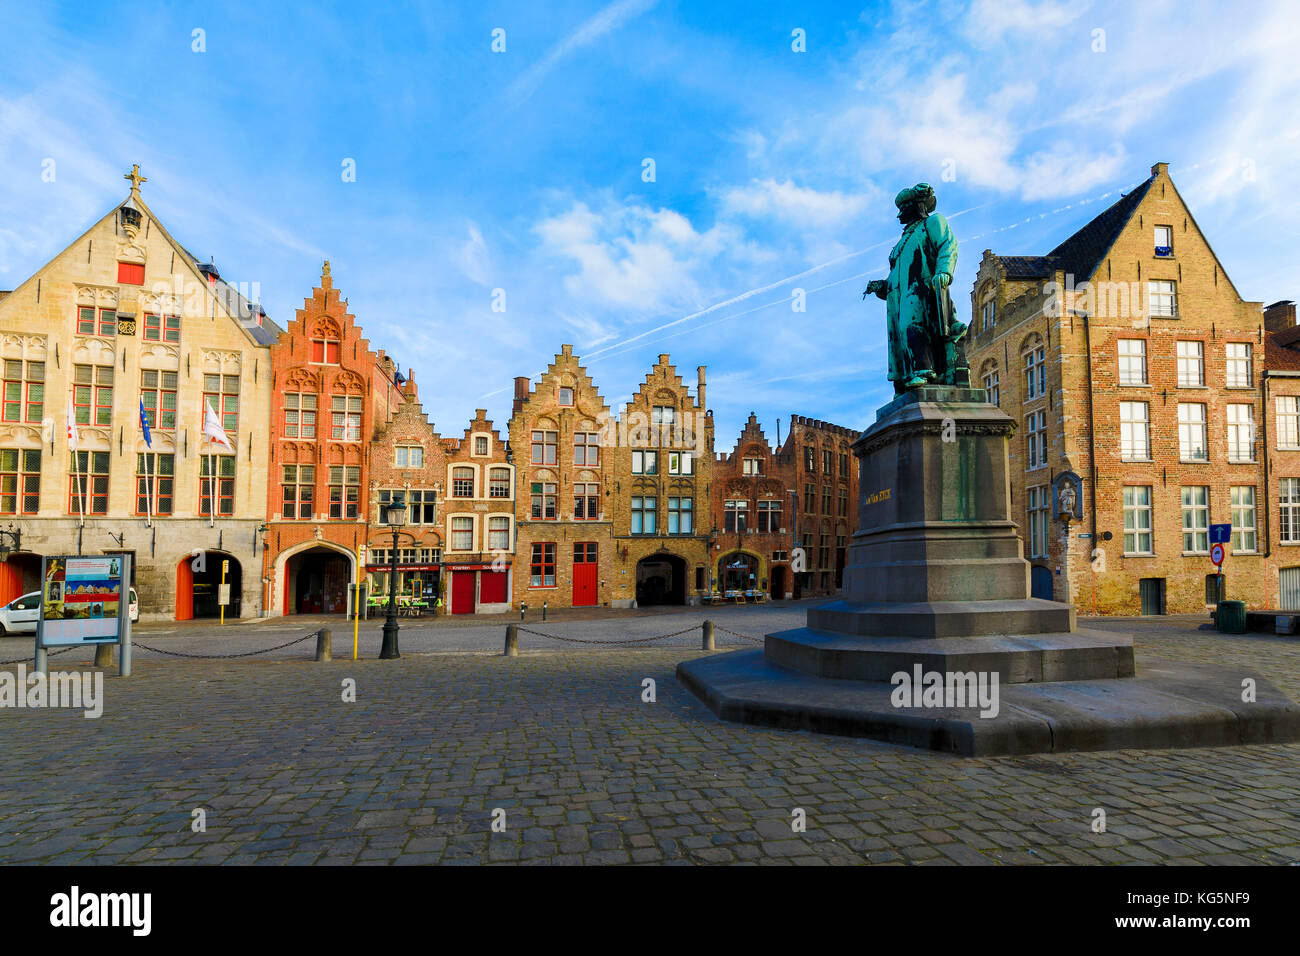 Antica statua in piazza medievale incorniciata dalle tipiche case ed edifici all'alba bruges Fiandre occidentale Europa Belgio Foto Stock